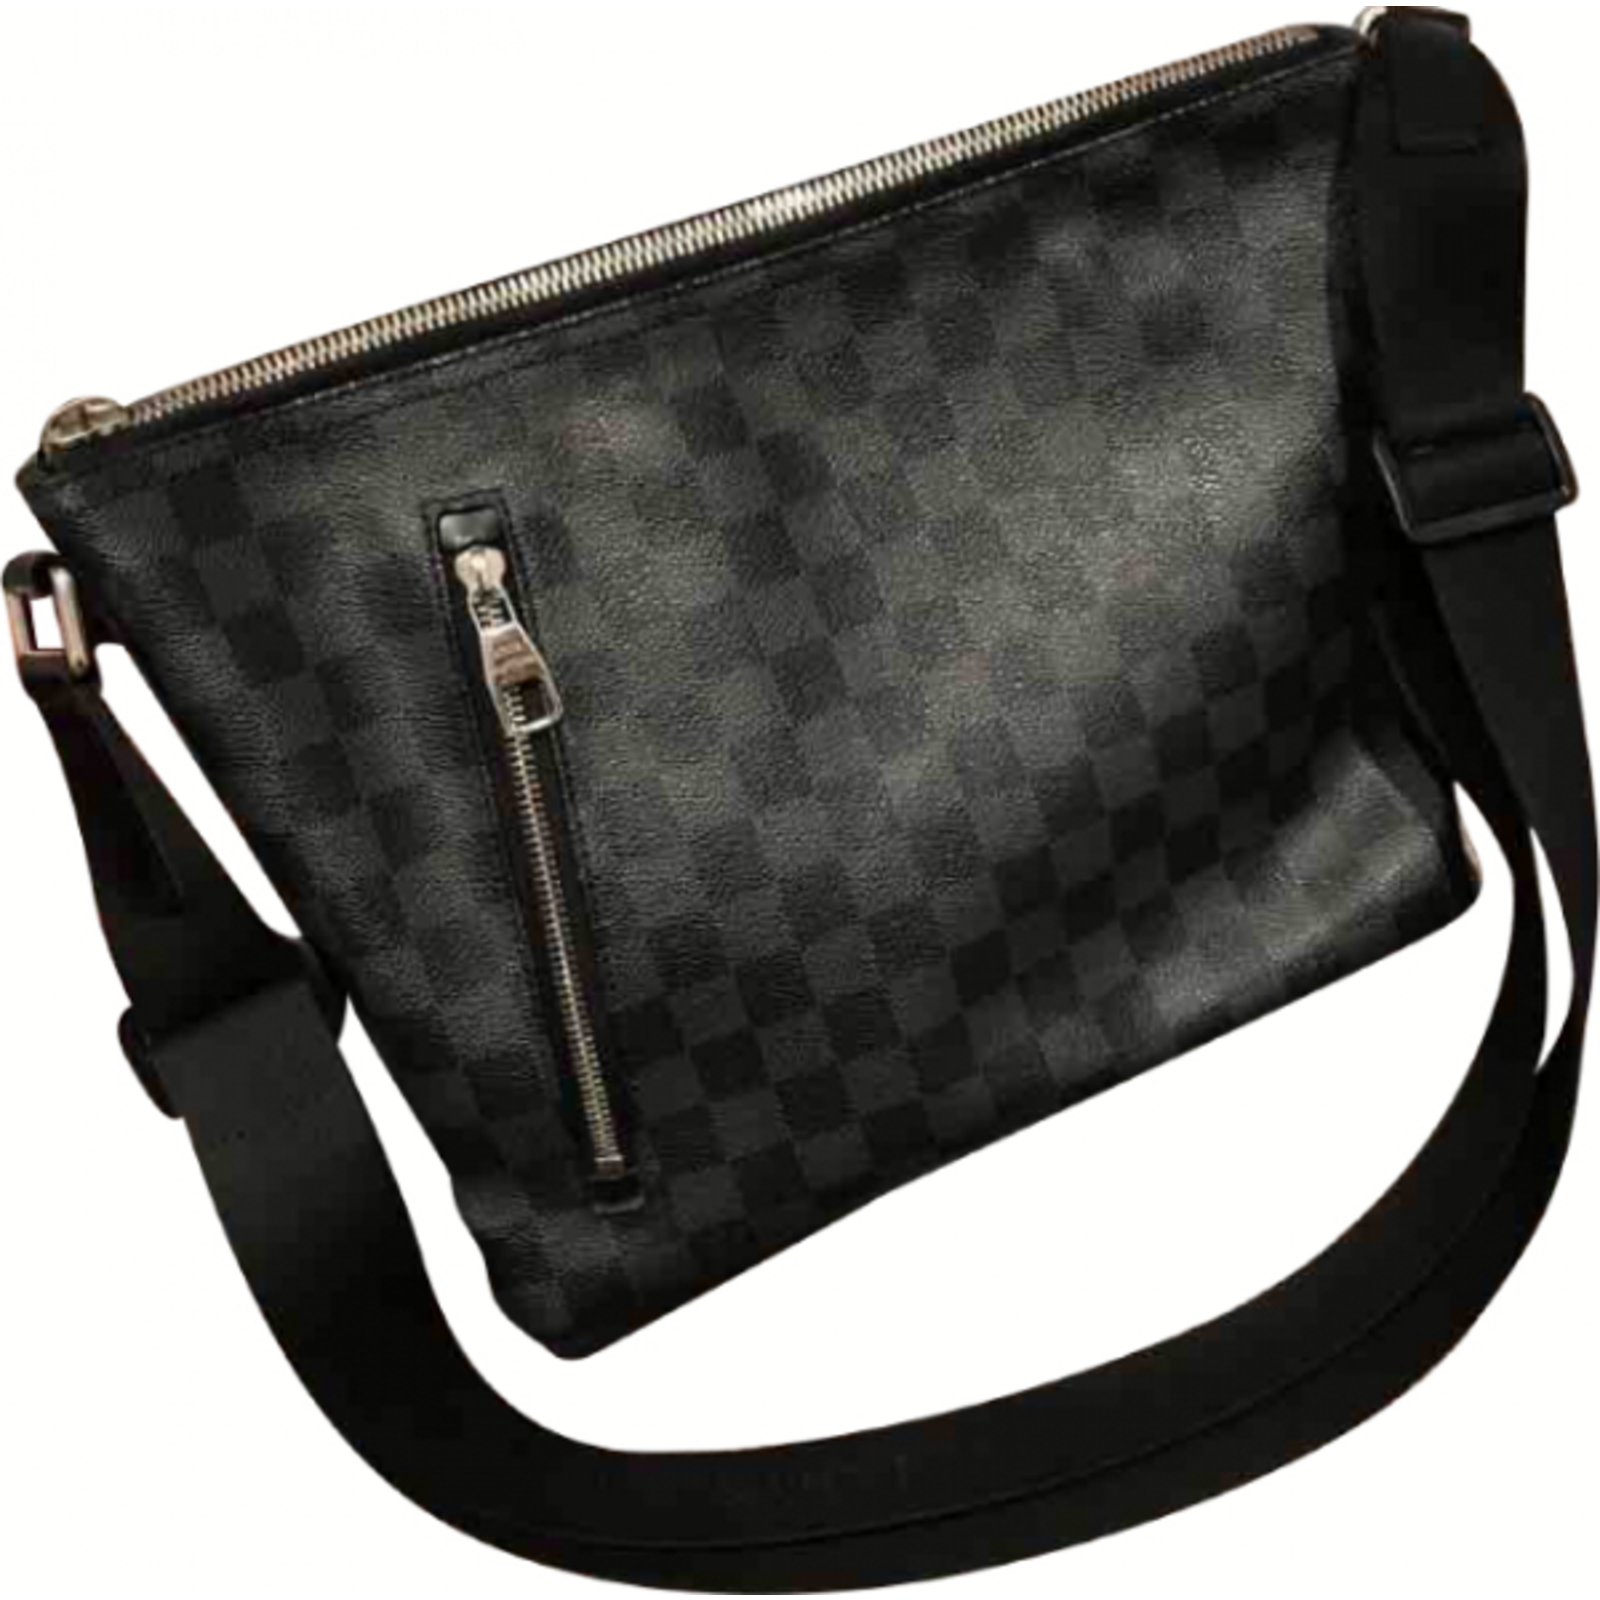 Louis Vuitton Damier Graphite Canvas Mick PM Messenger Bag